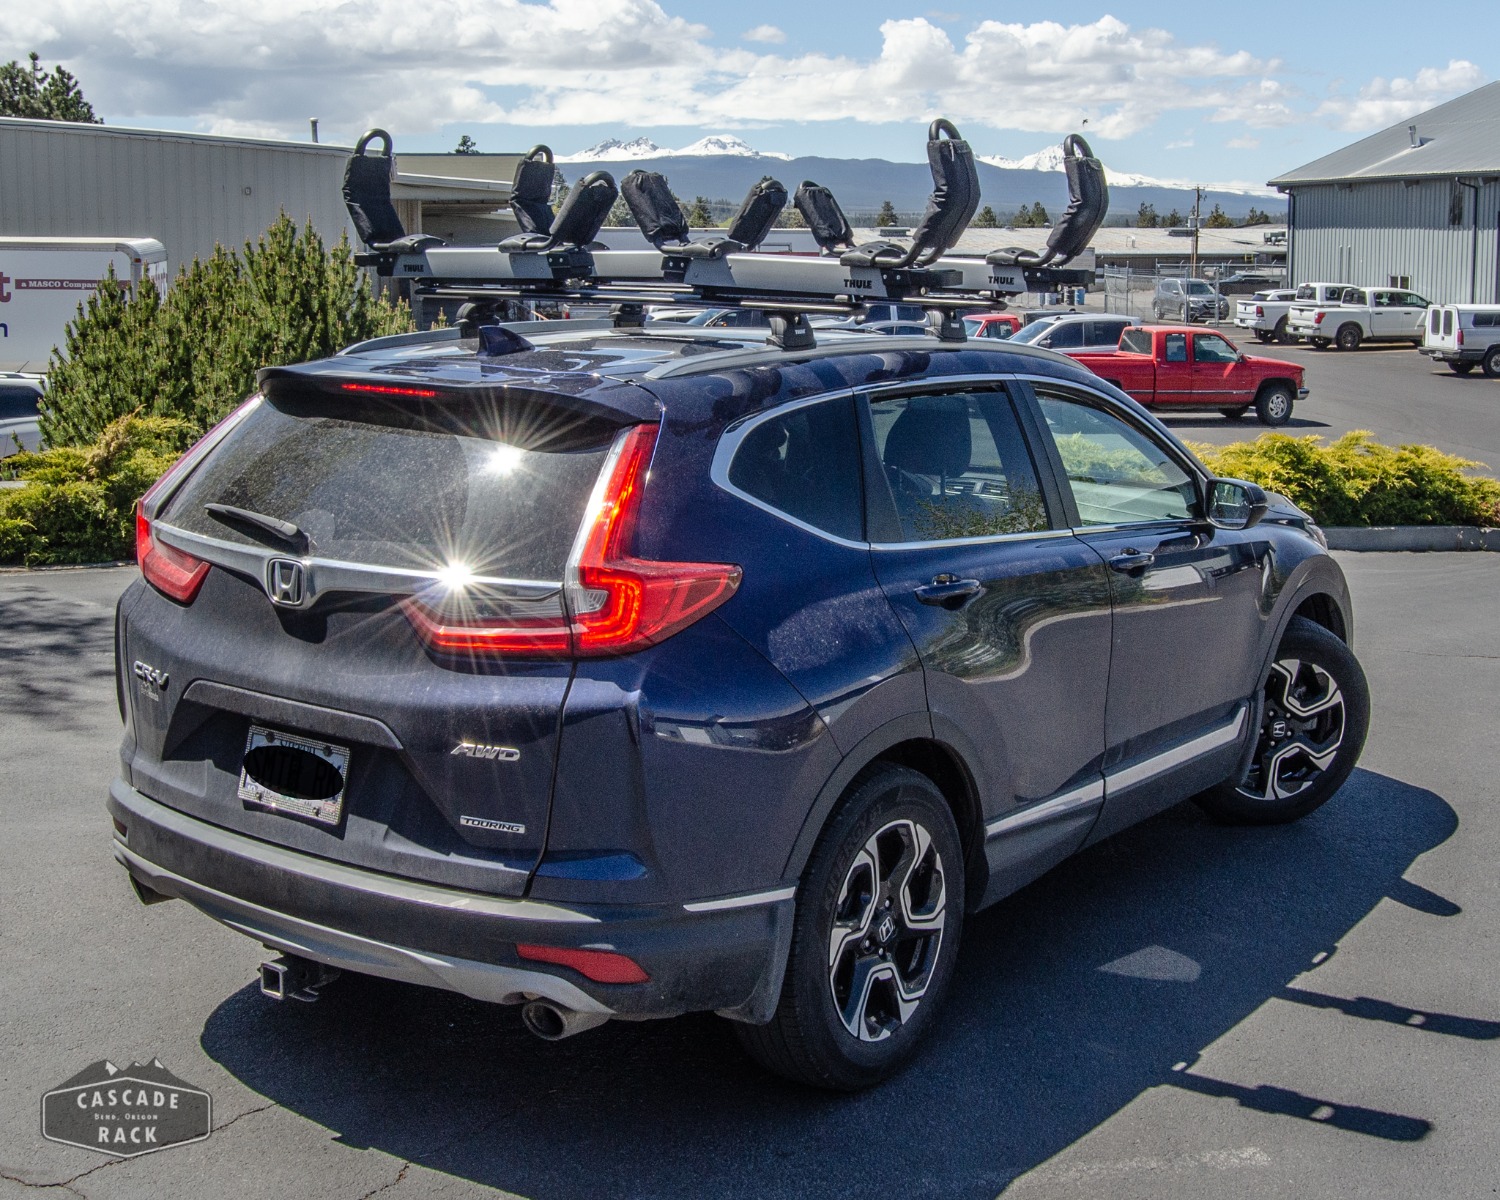 2017 Honda CRV - Crossbars and Kayak Racks - Thule